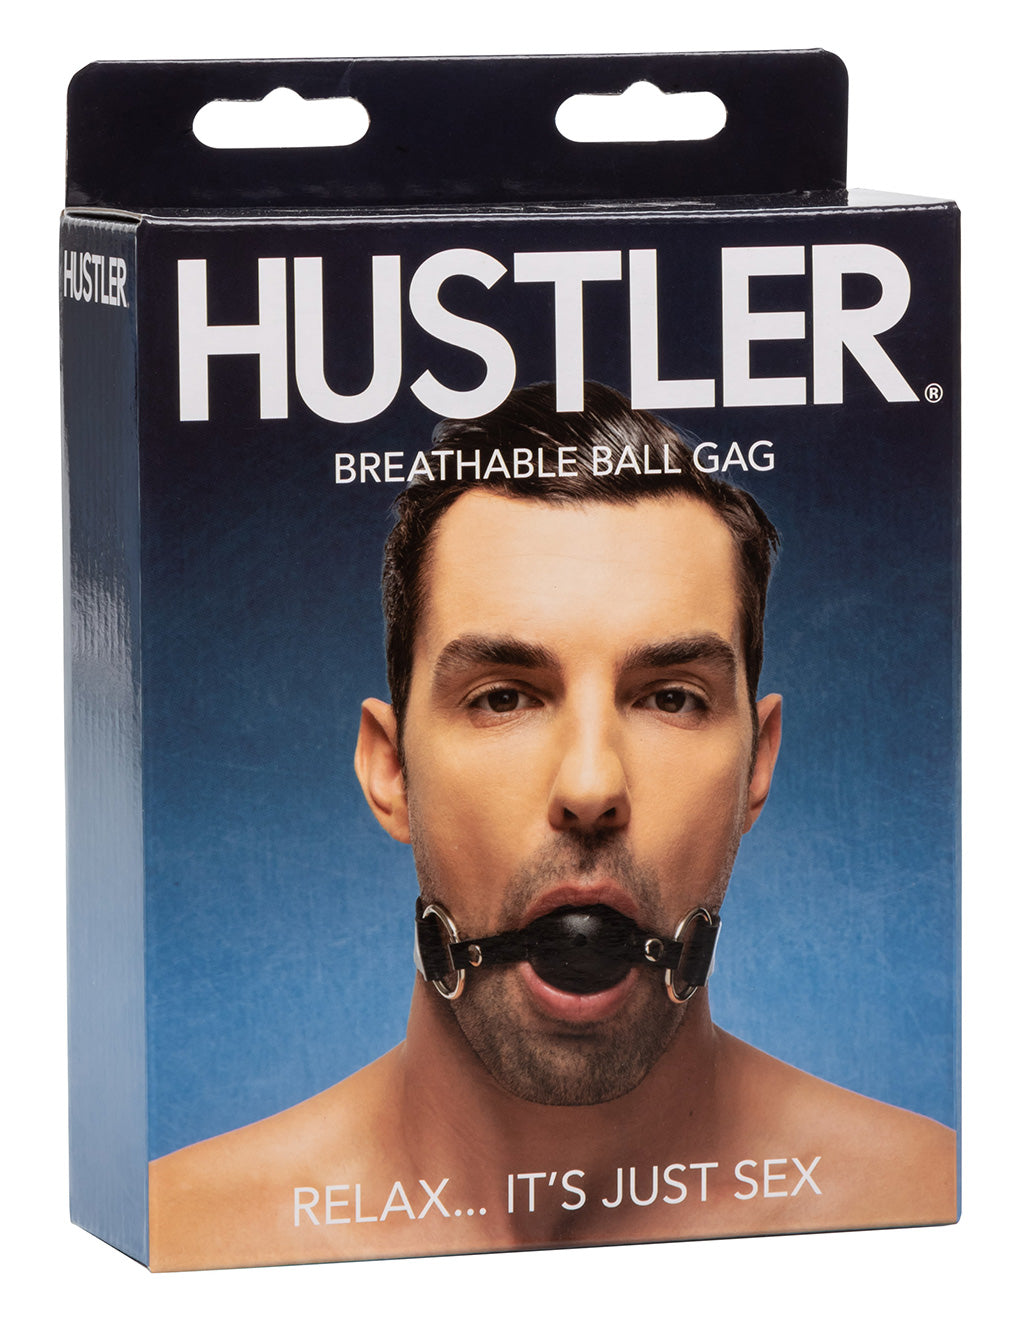 Hustler® Breathable Ball Gag- Black- Back box